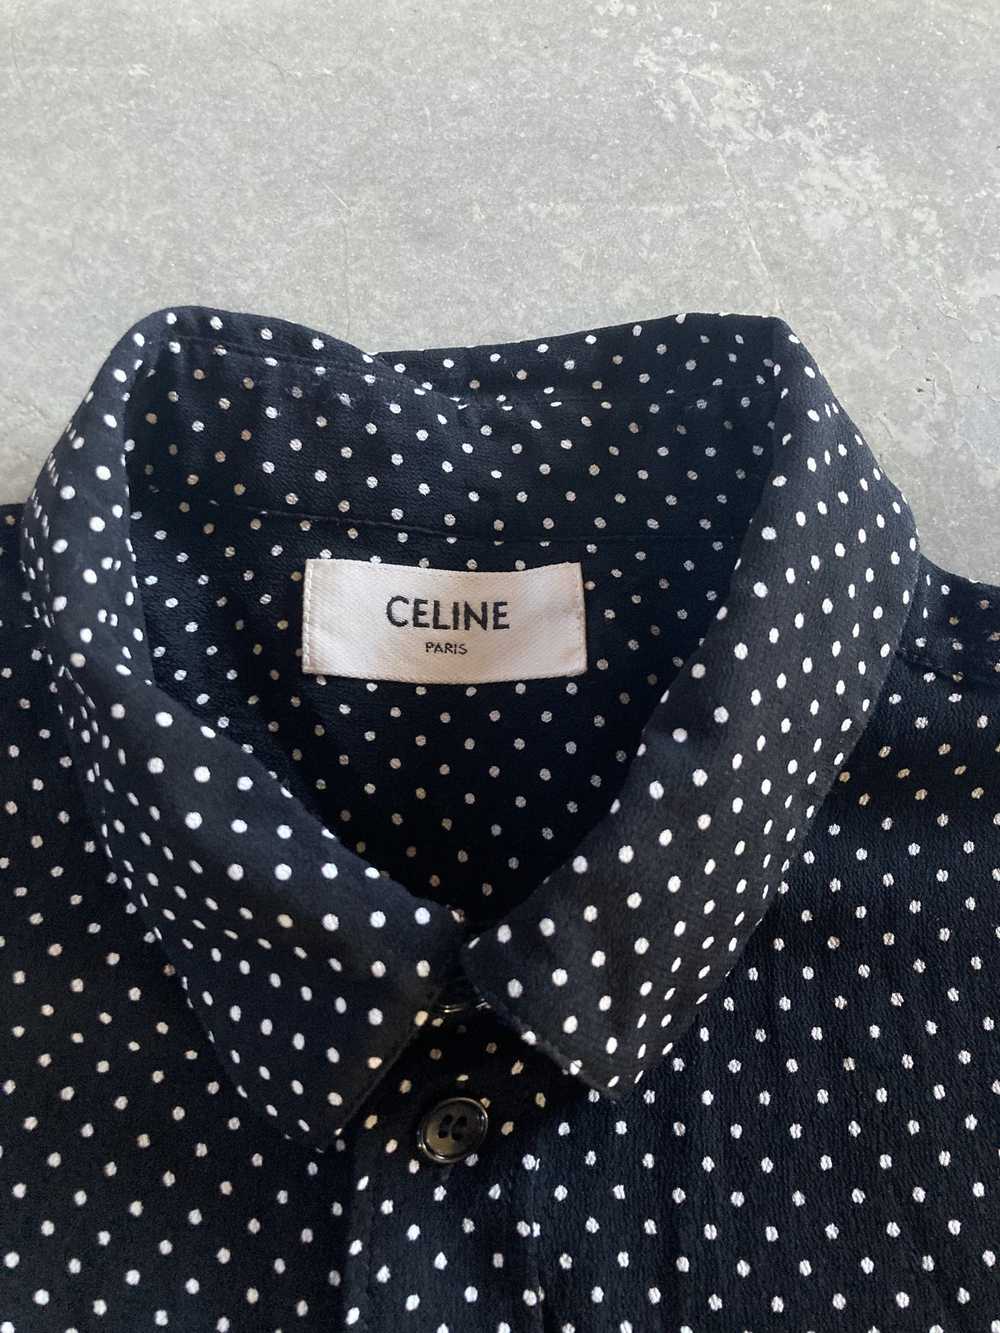 Celine Celine Hedi Slimane Polka Dot Viscose Shirt - image 2